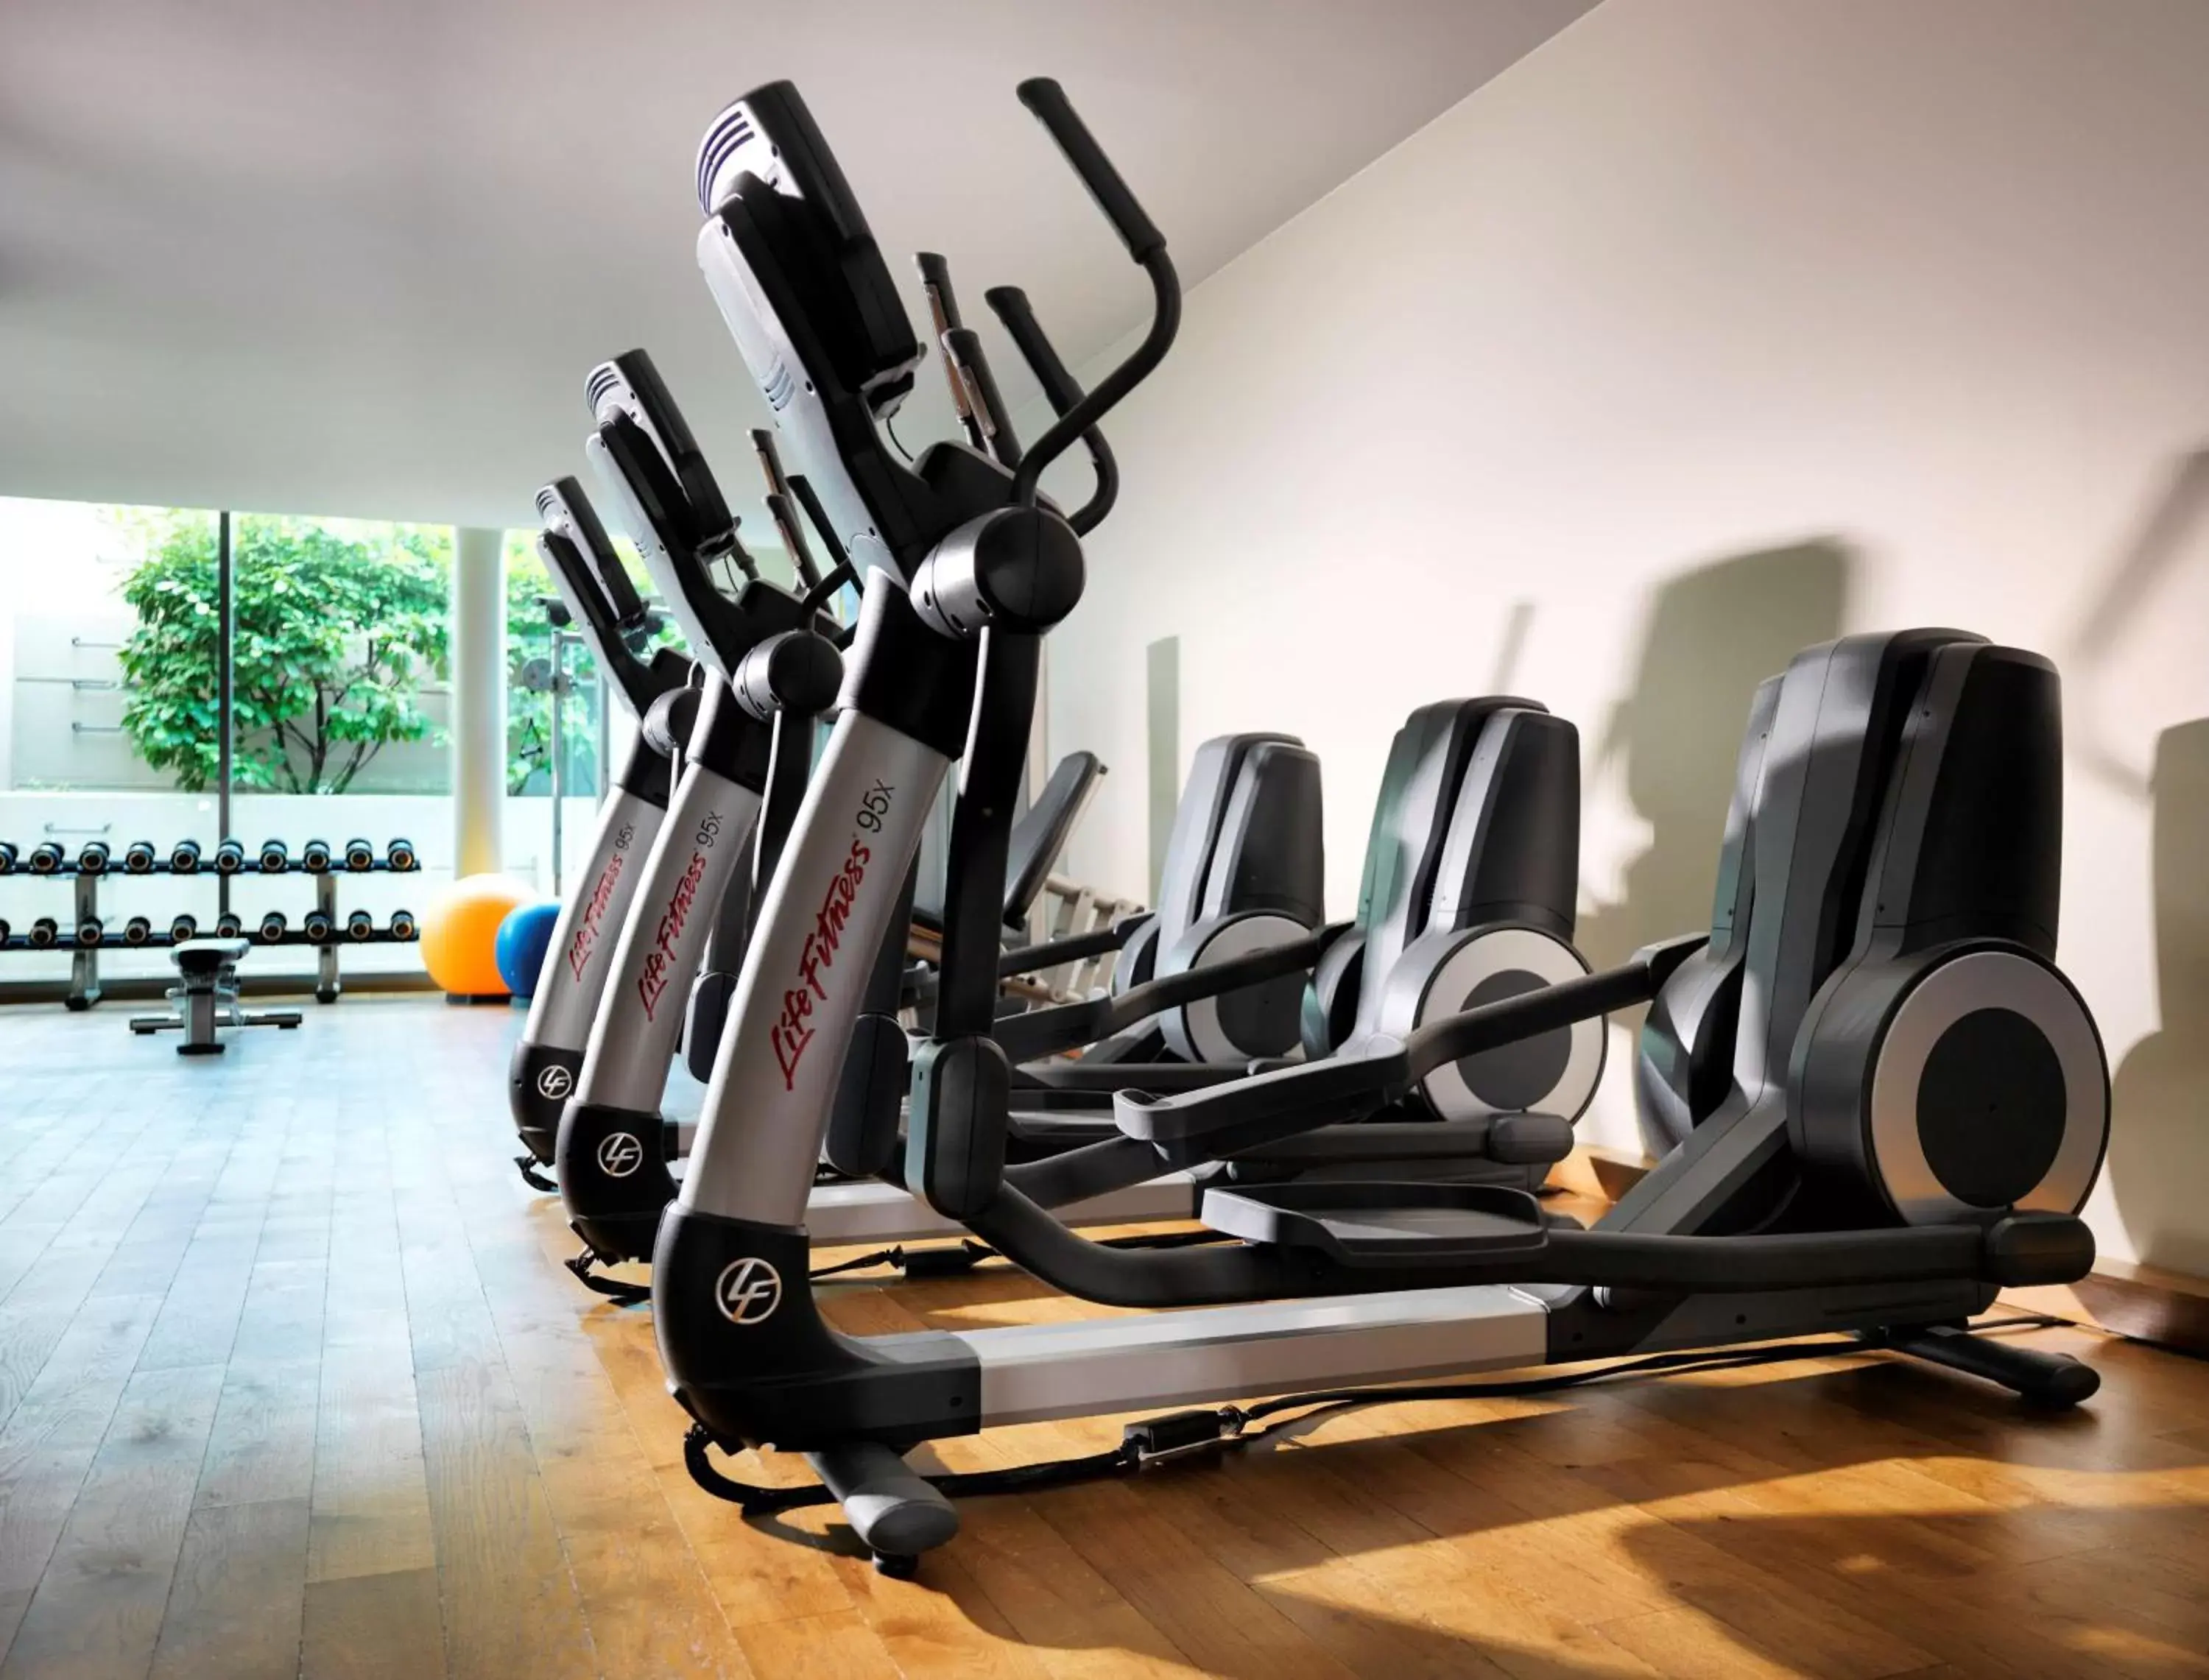 Spa and wellness centre/facilities, Fitness Center/Facilities in Hyatt Regency Mainz